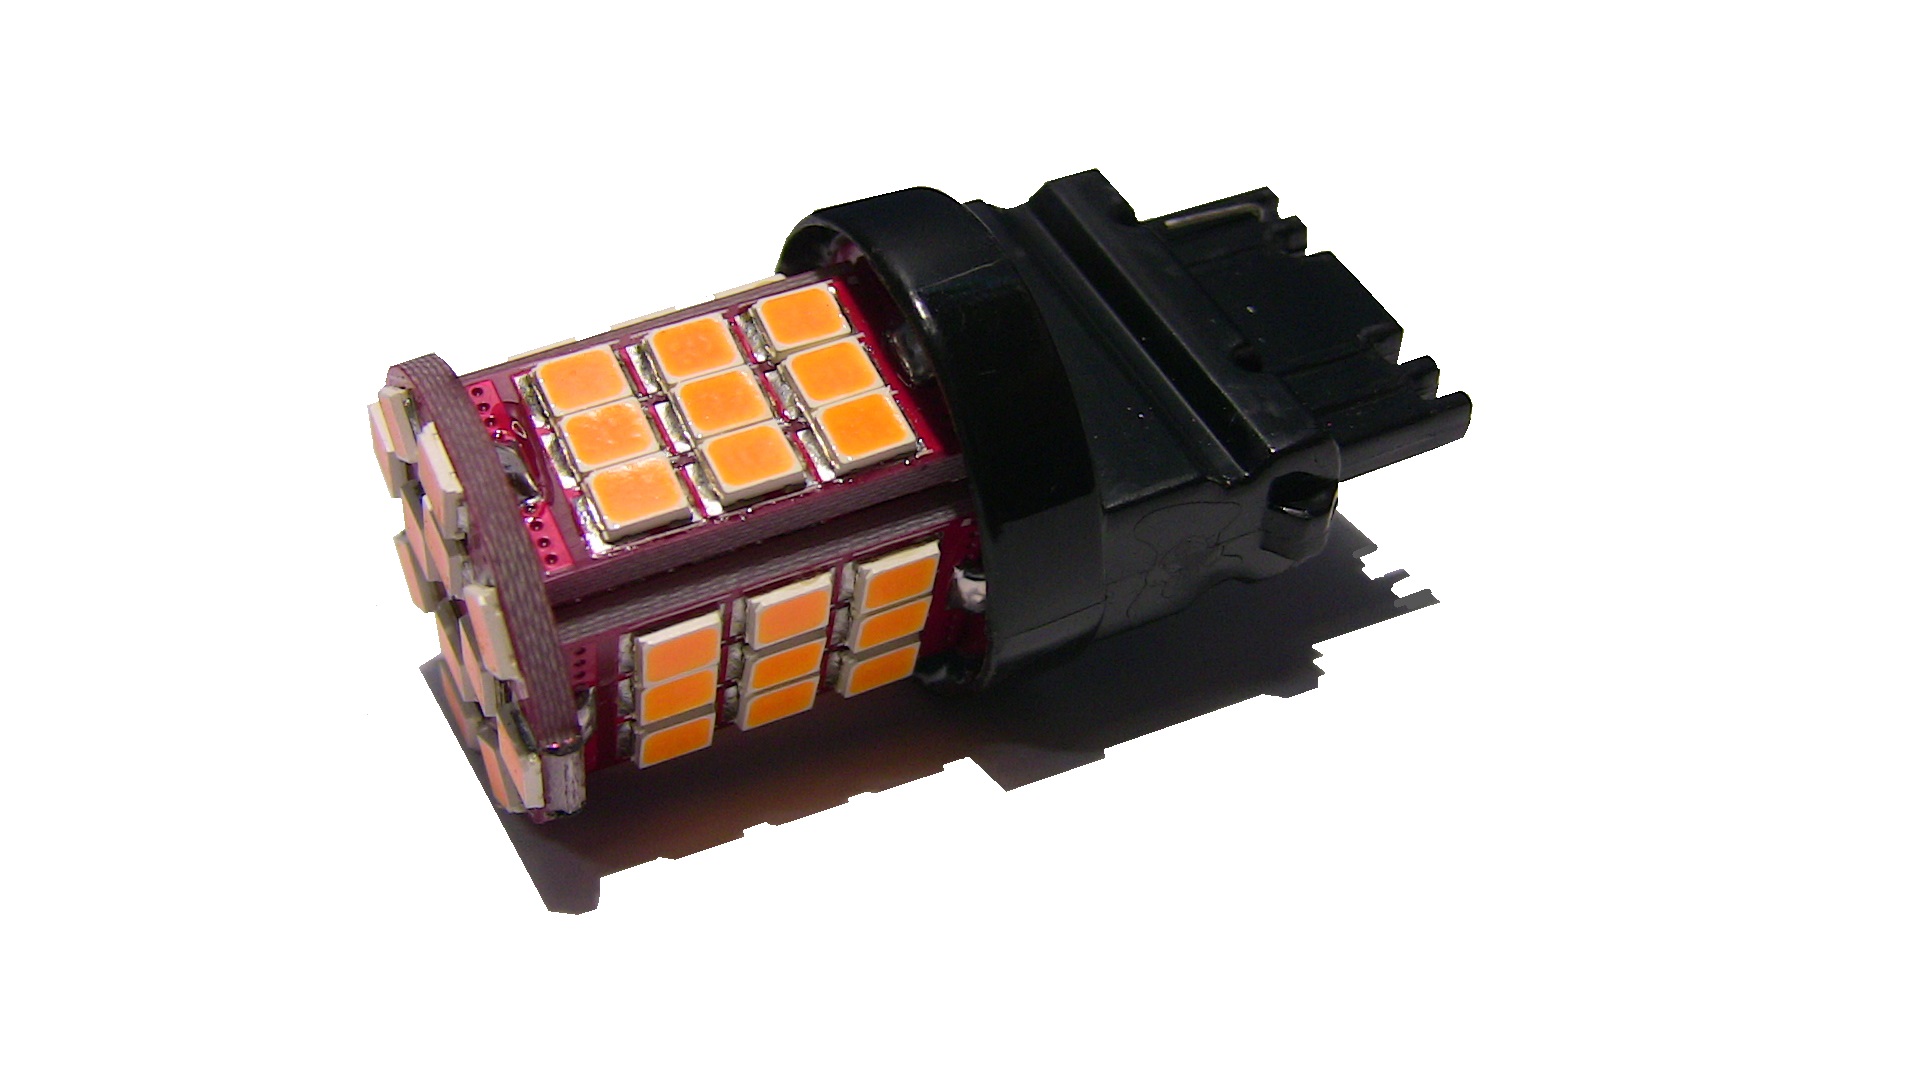 WY21W - W21W - W3x16d led and diode for flasher/turn signals on